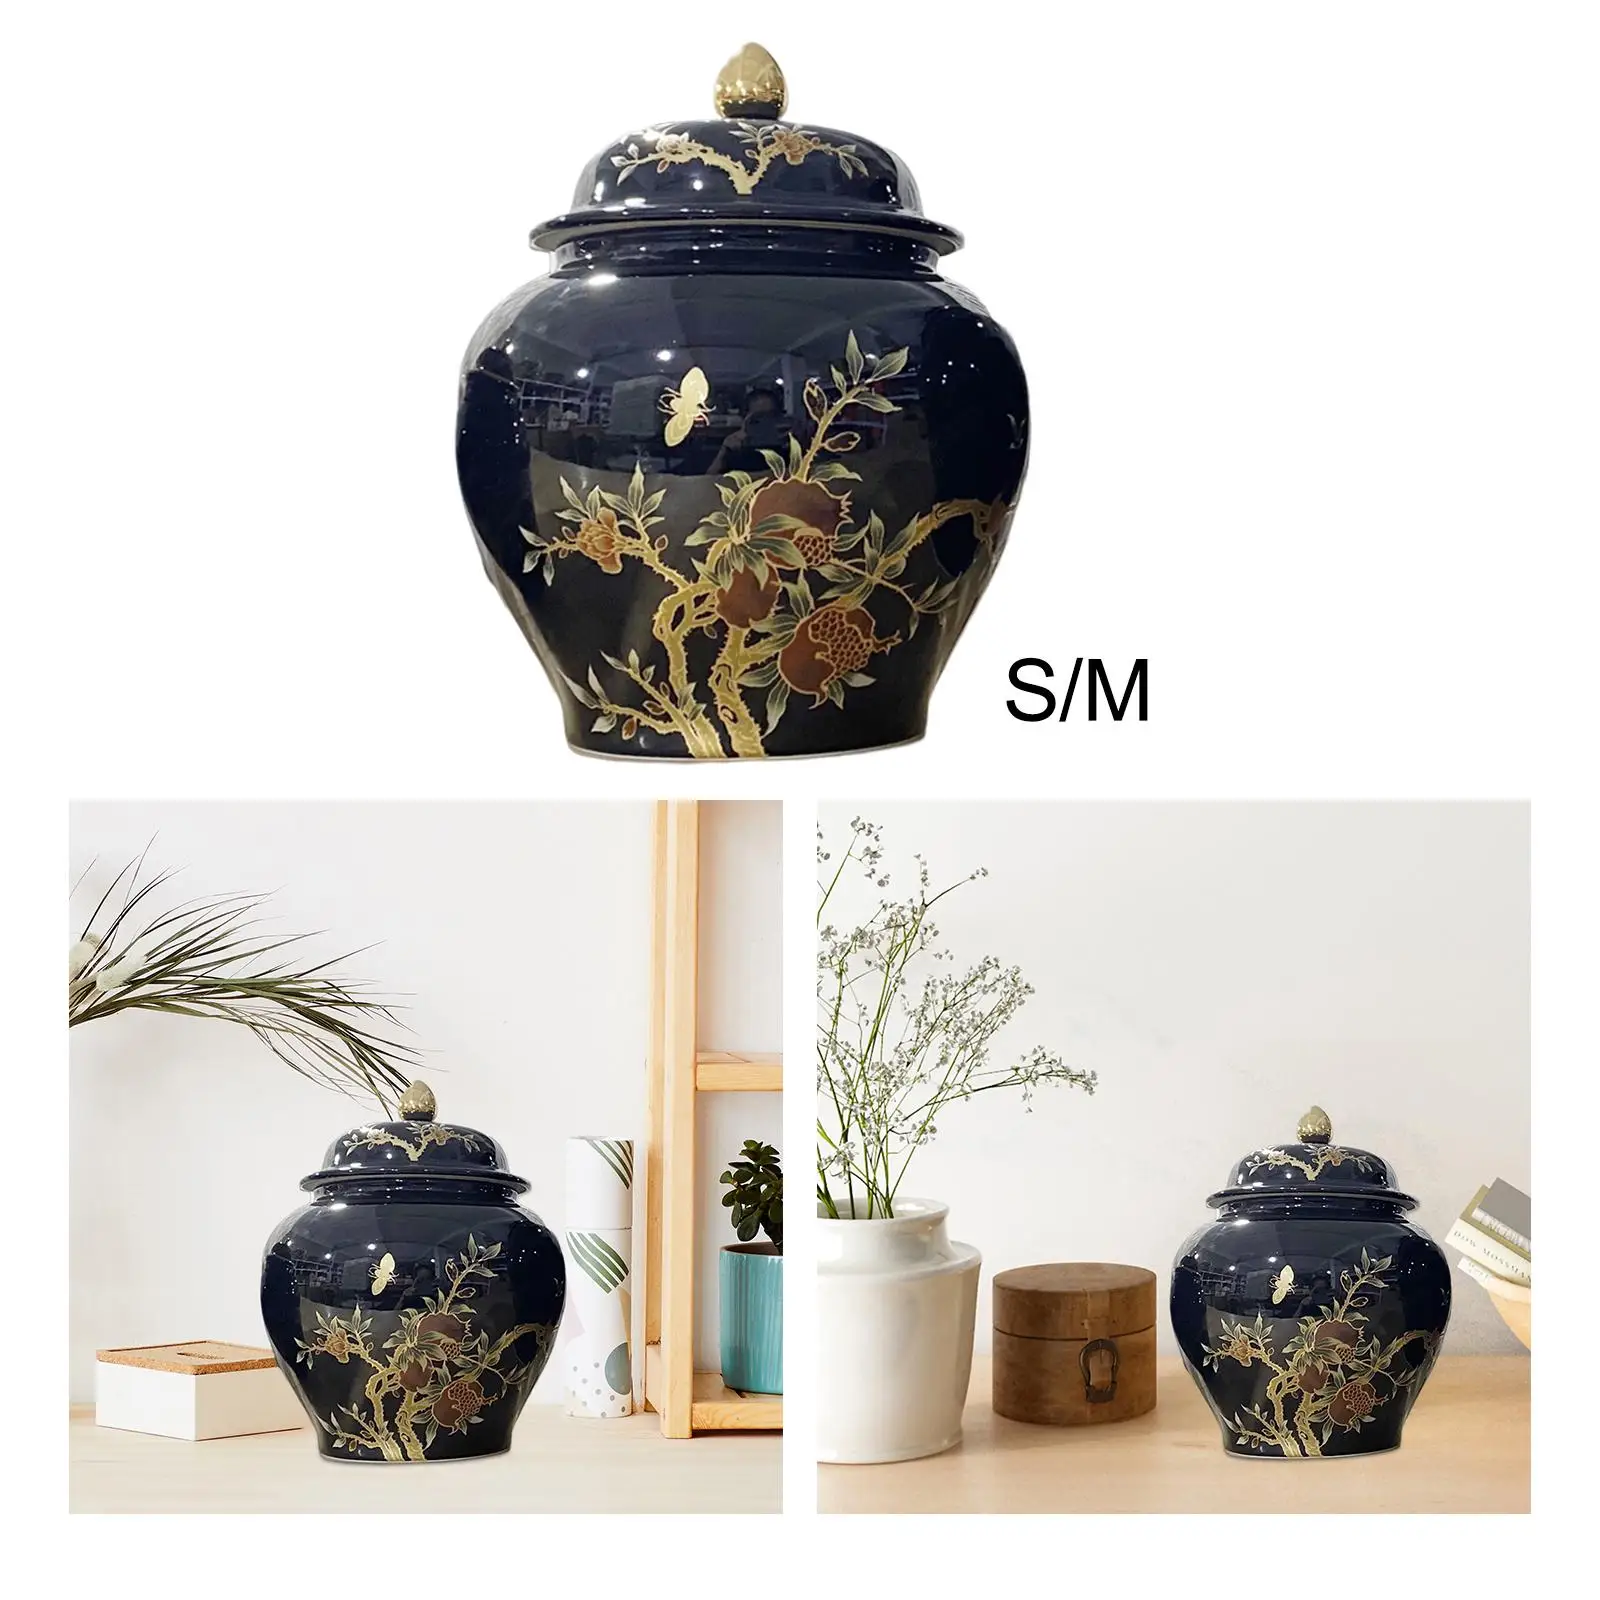 Porcelain Ginger Jar with Lid Tea Storage Jar Plants Holder Handicraft Ornaments for Party Office Bookshelf Bedroom Decor